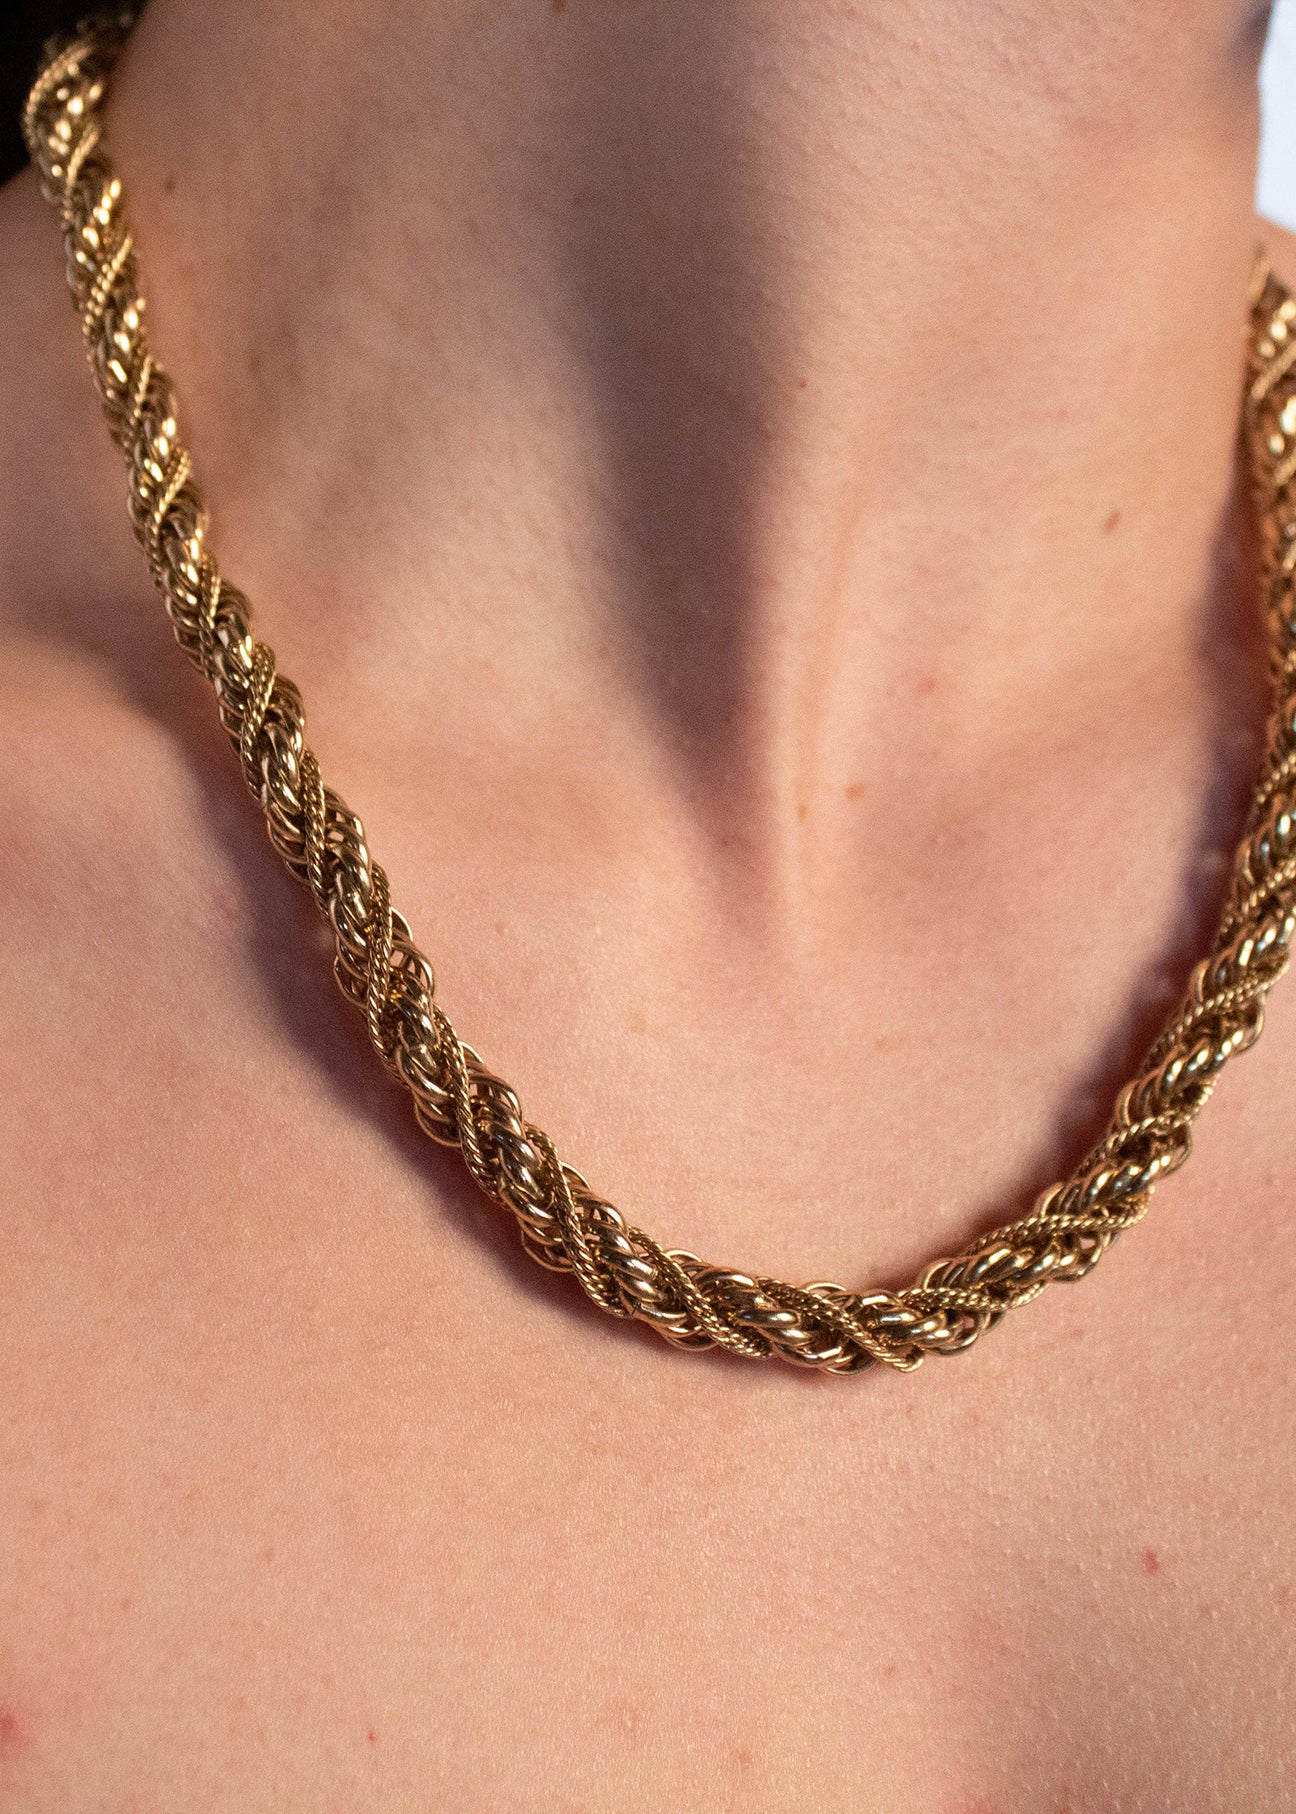 Monet Necklace & Bracelet Link Set Vintage | Vintage monet necklace, Monet  necklace, Gold tone necklace